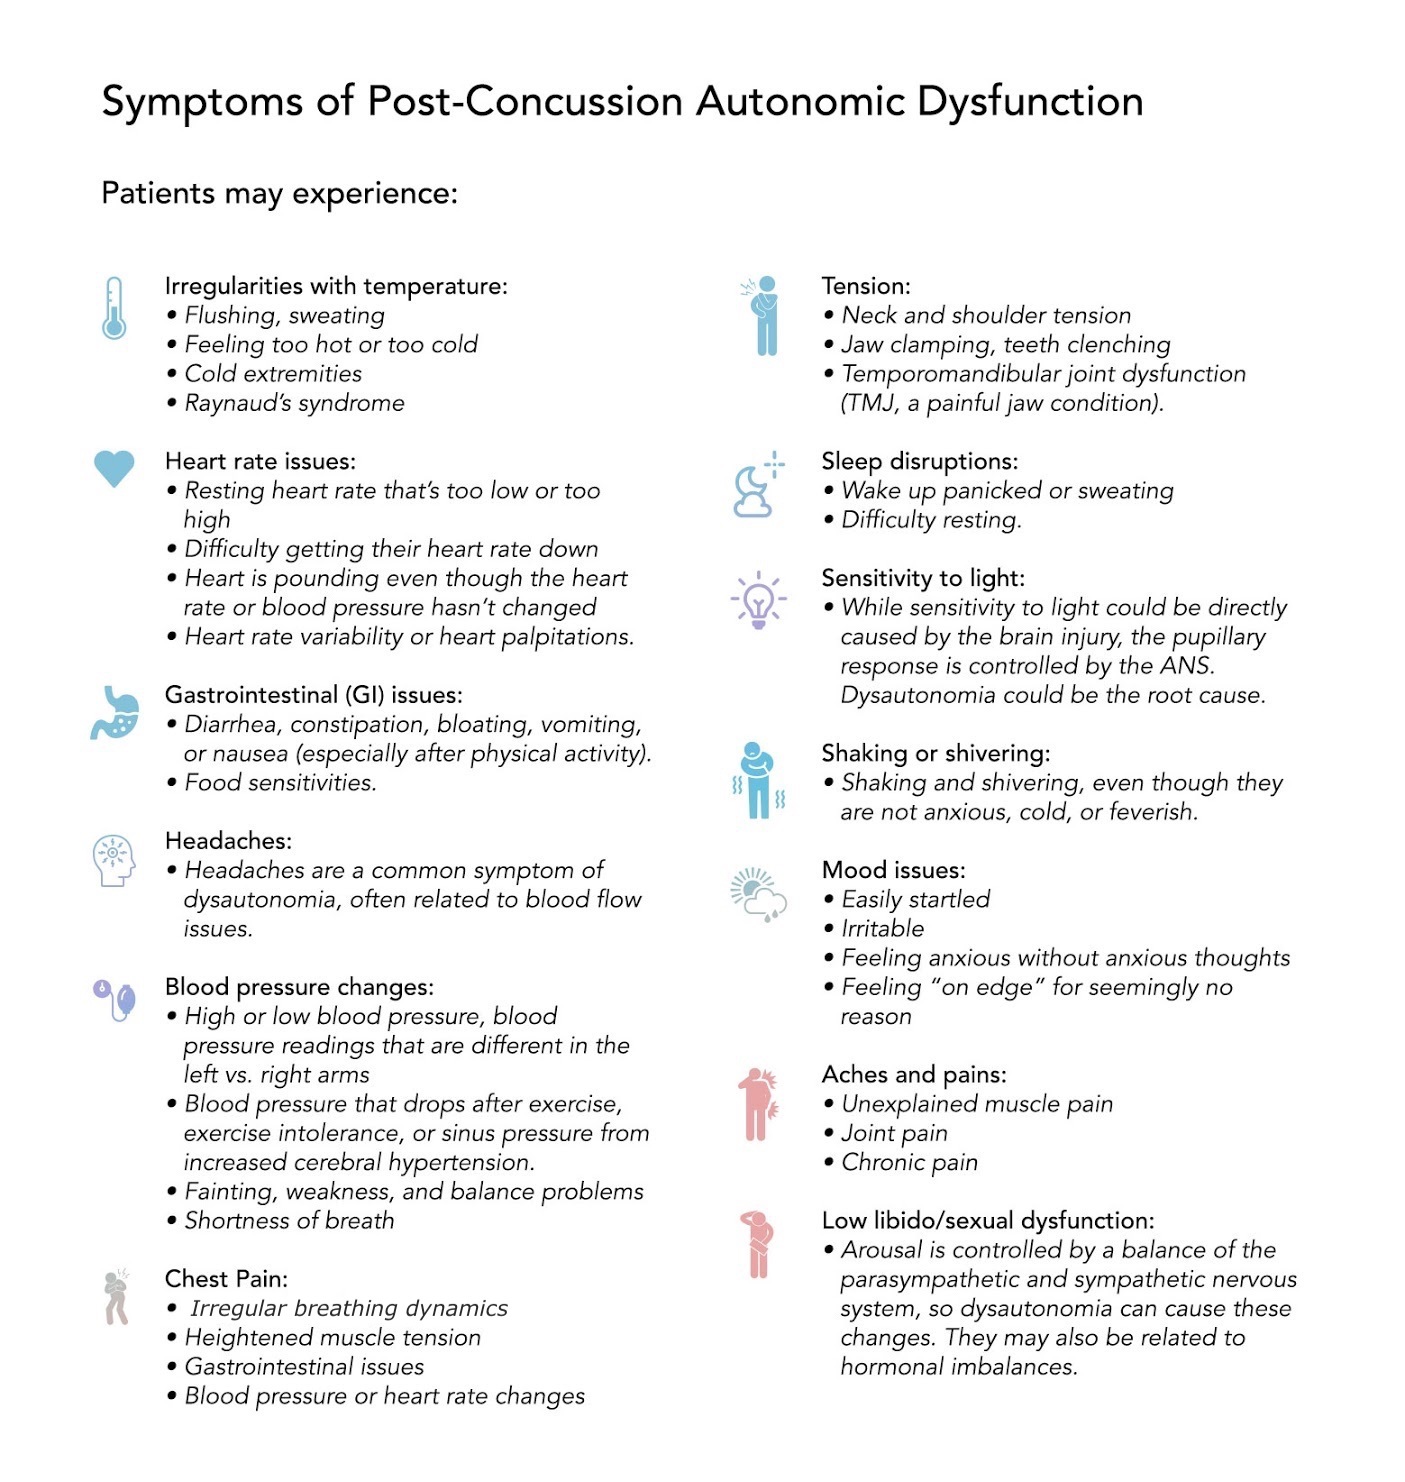 Symptoms of Post-Concussion Autonomic Dysfunction